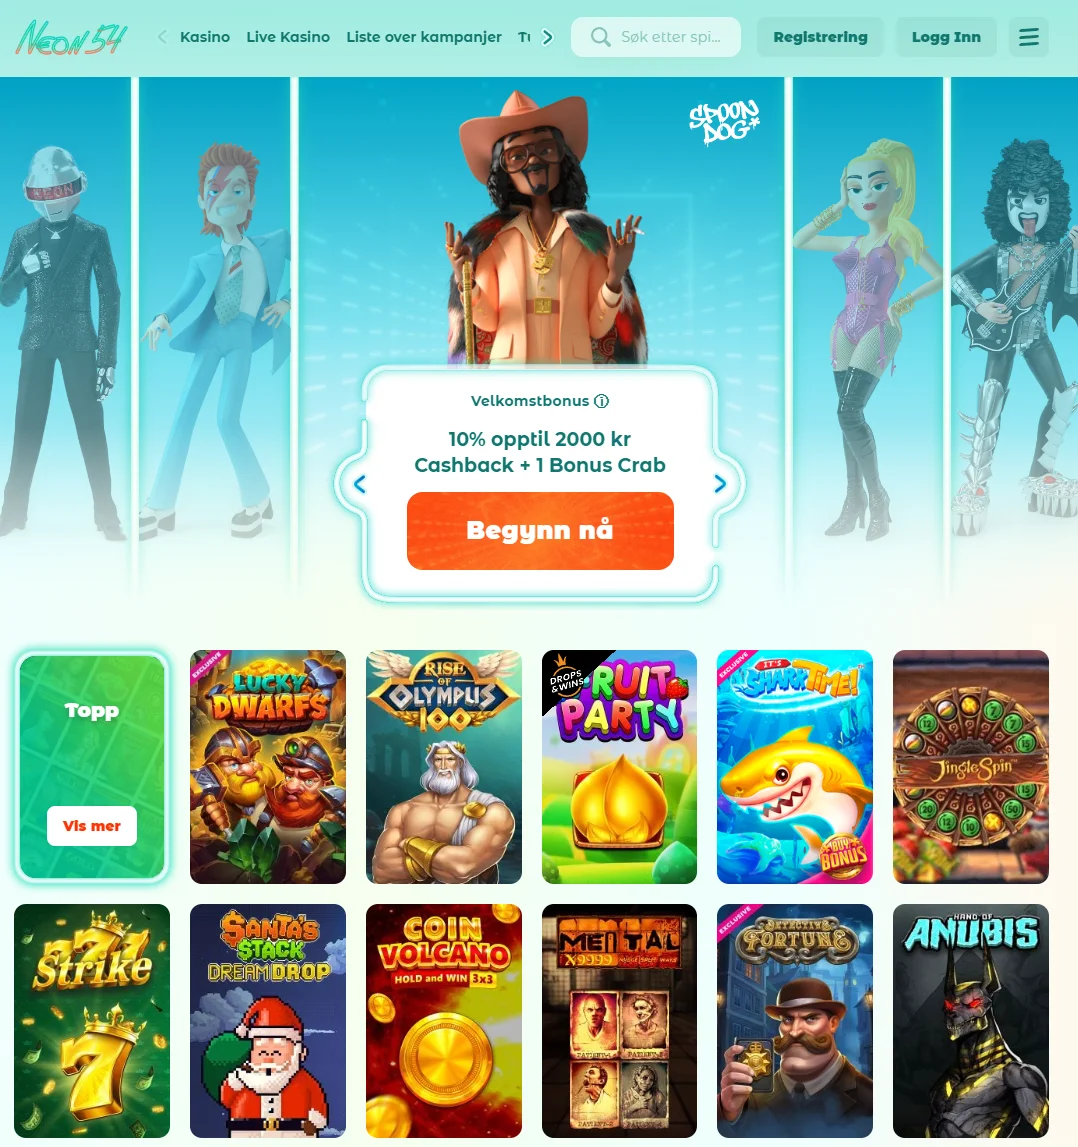 Neon54 online casino